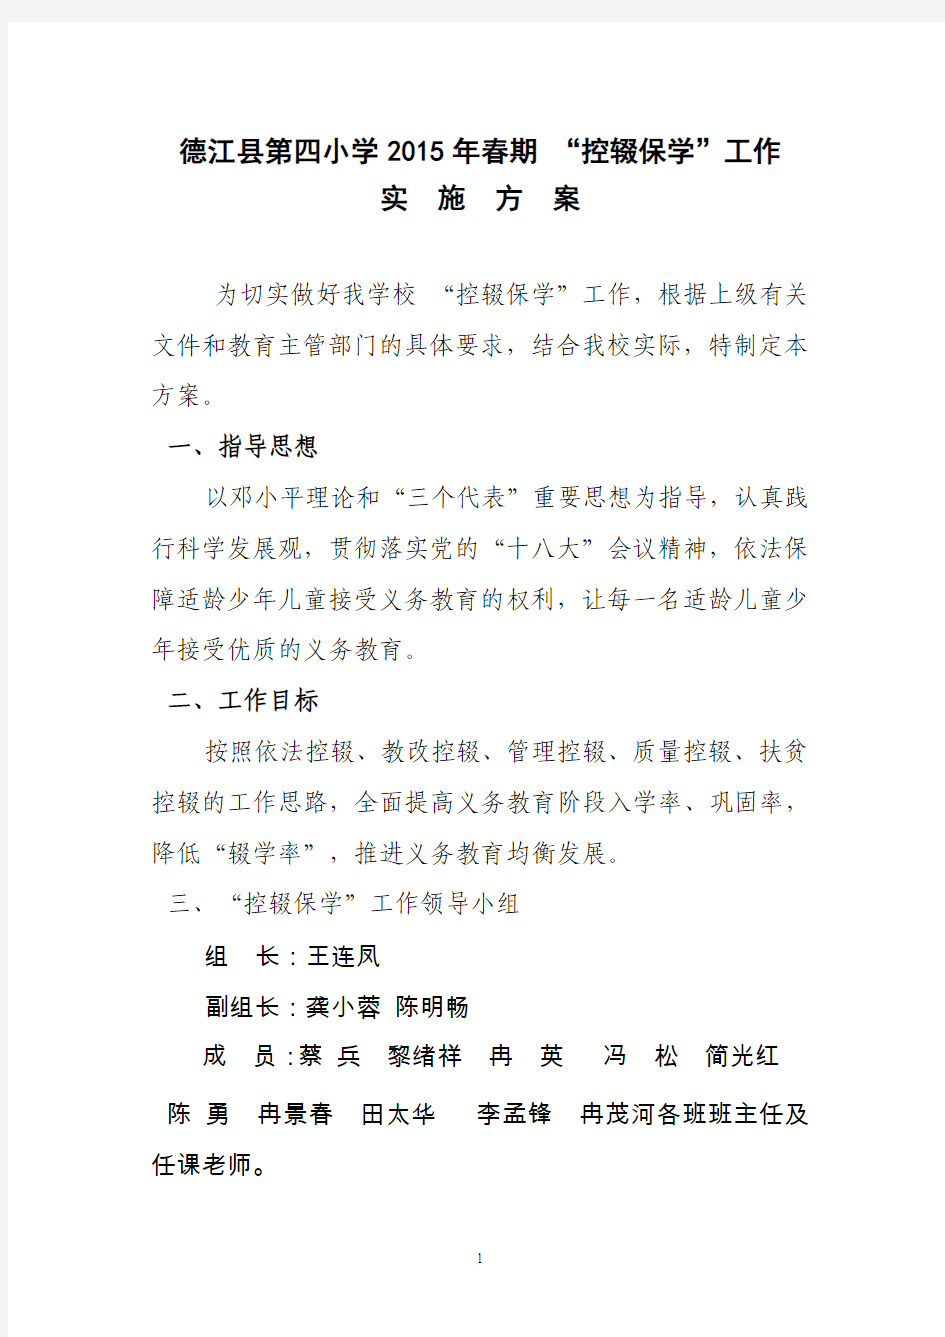 德江县第四小学2015年2月宣传活动实施方案1